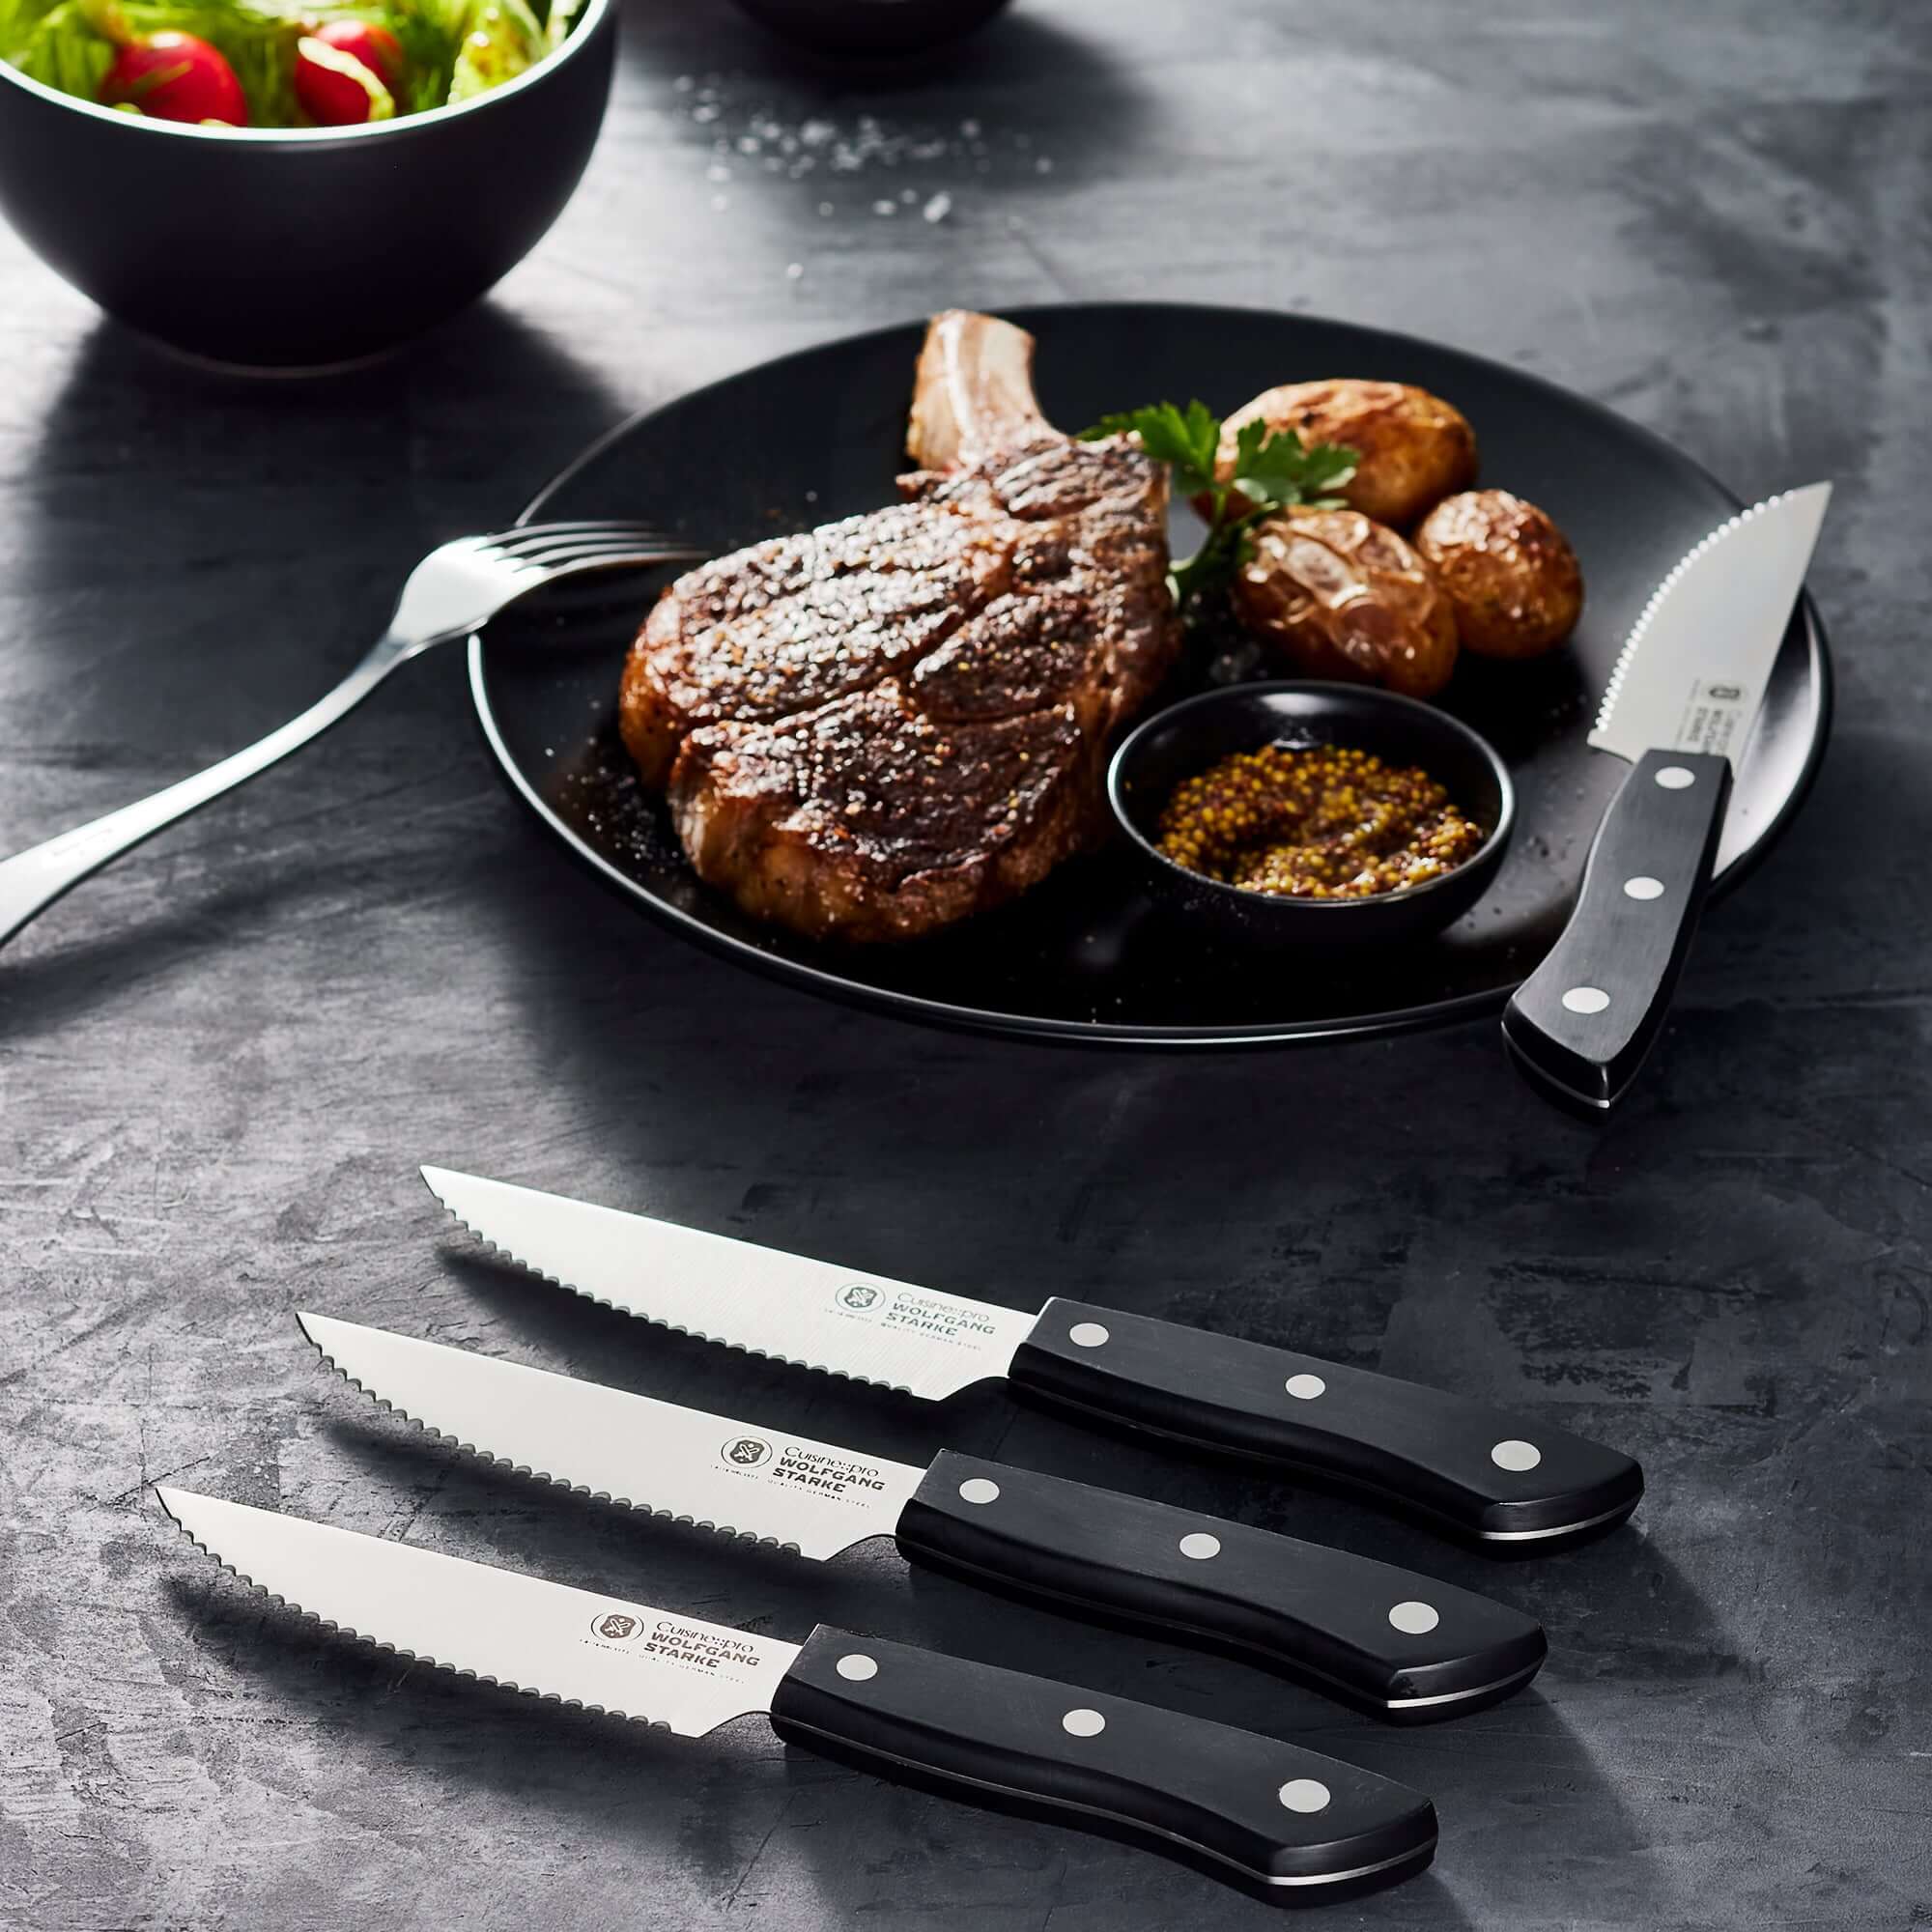 Cuisine::pro® WOLFGANG STARKE™ 4-Piece Steak Knife Set 12.5cm 5in-1032397